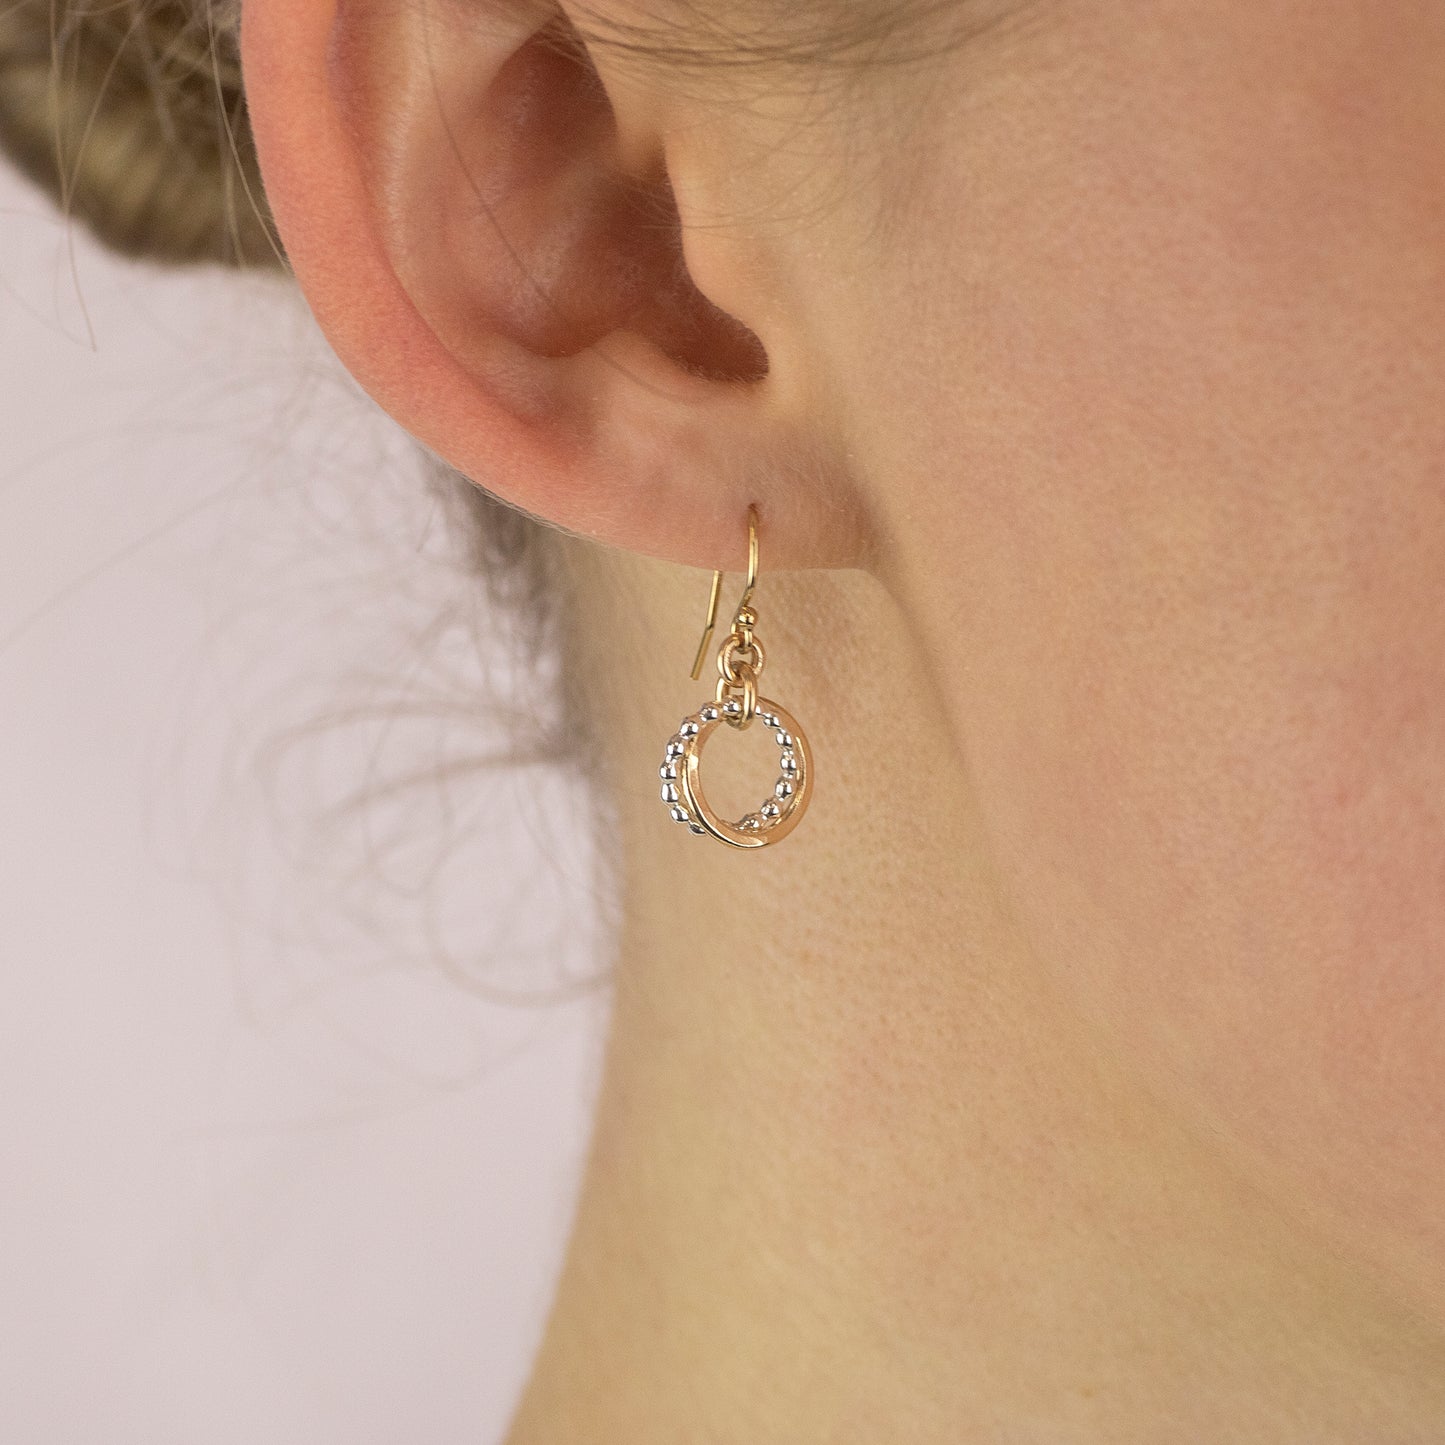 Love Knot Earrings - Double Link Earrings - Silver & Gold